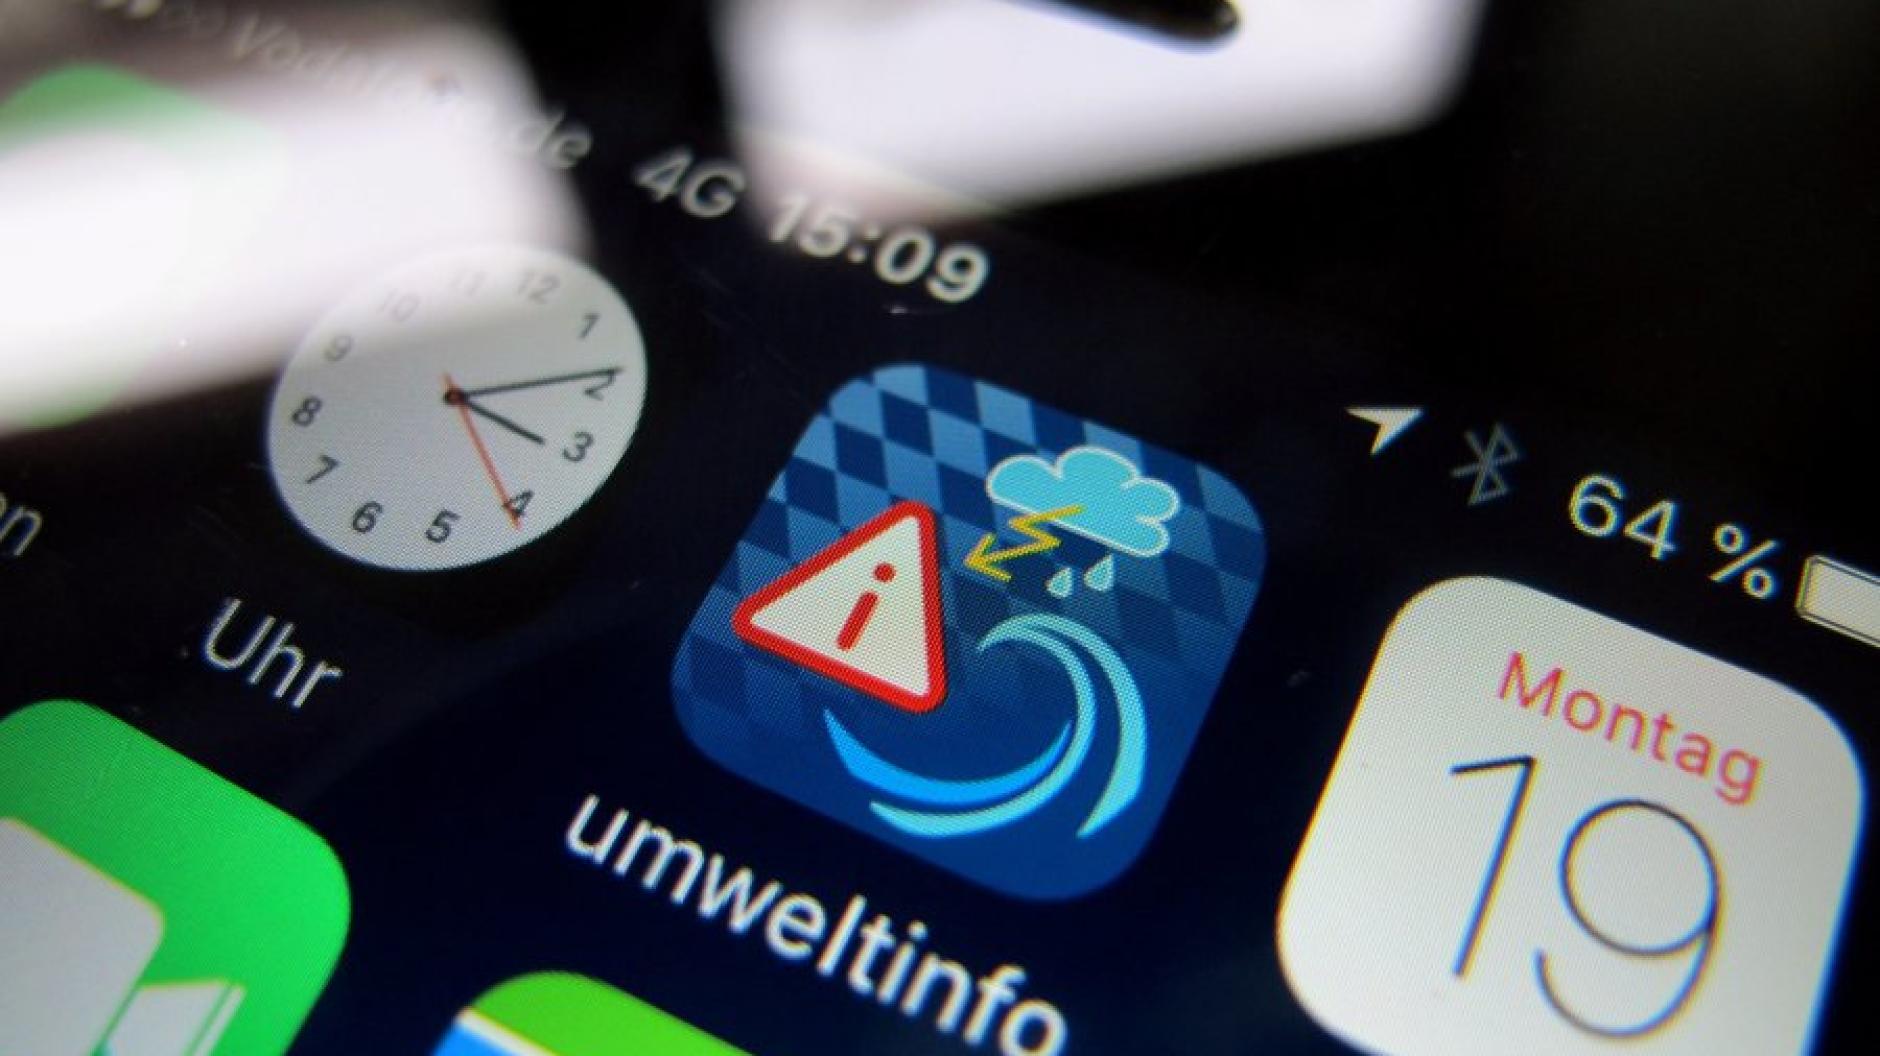 Unwetter App Umweltinfo Neue Handy App Soll Vor Unwettern In Bayern